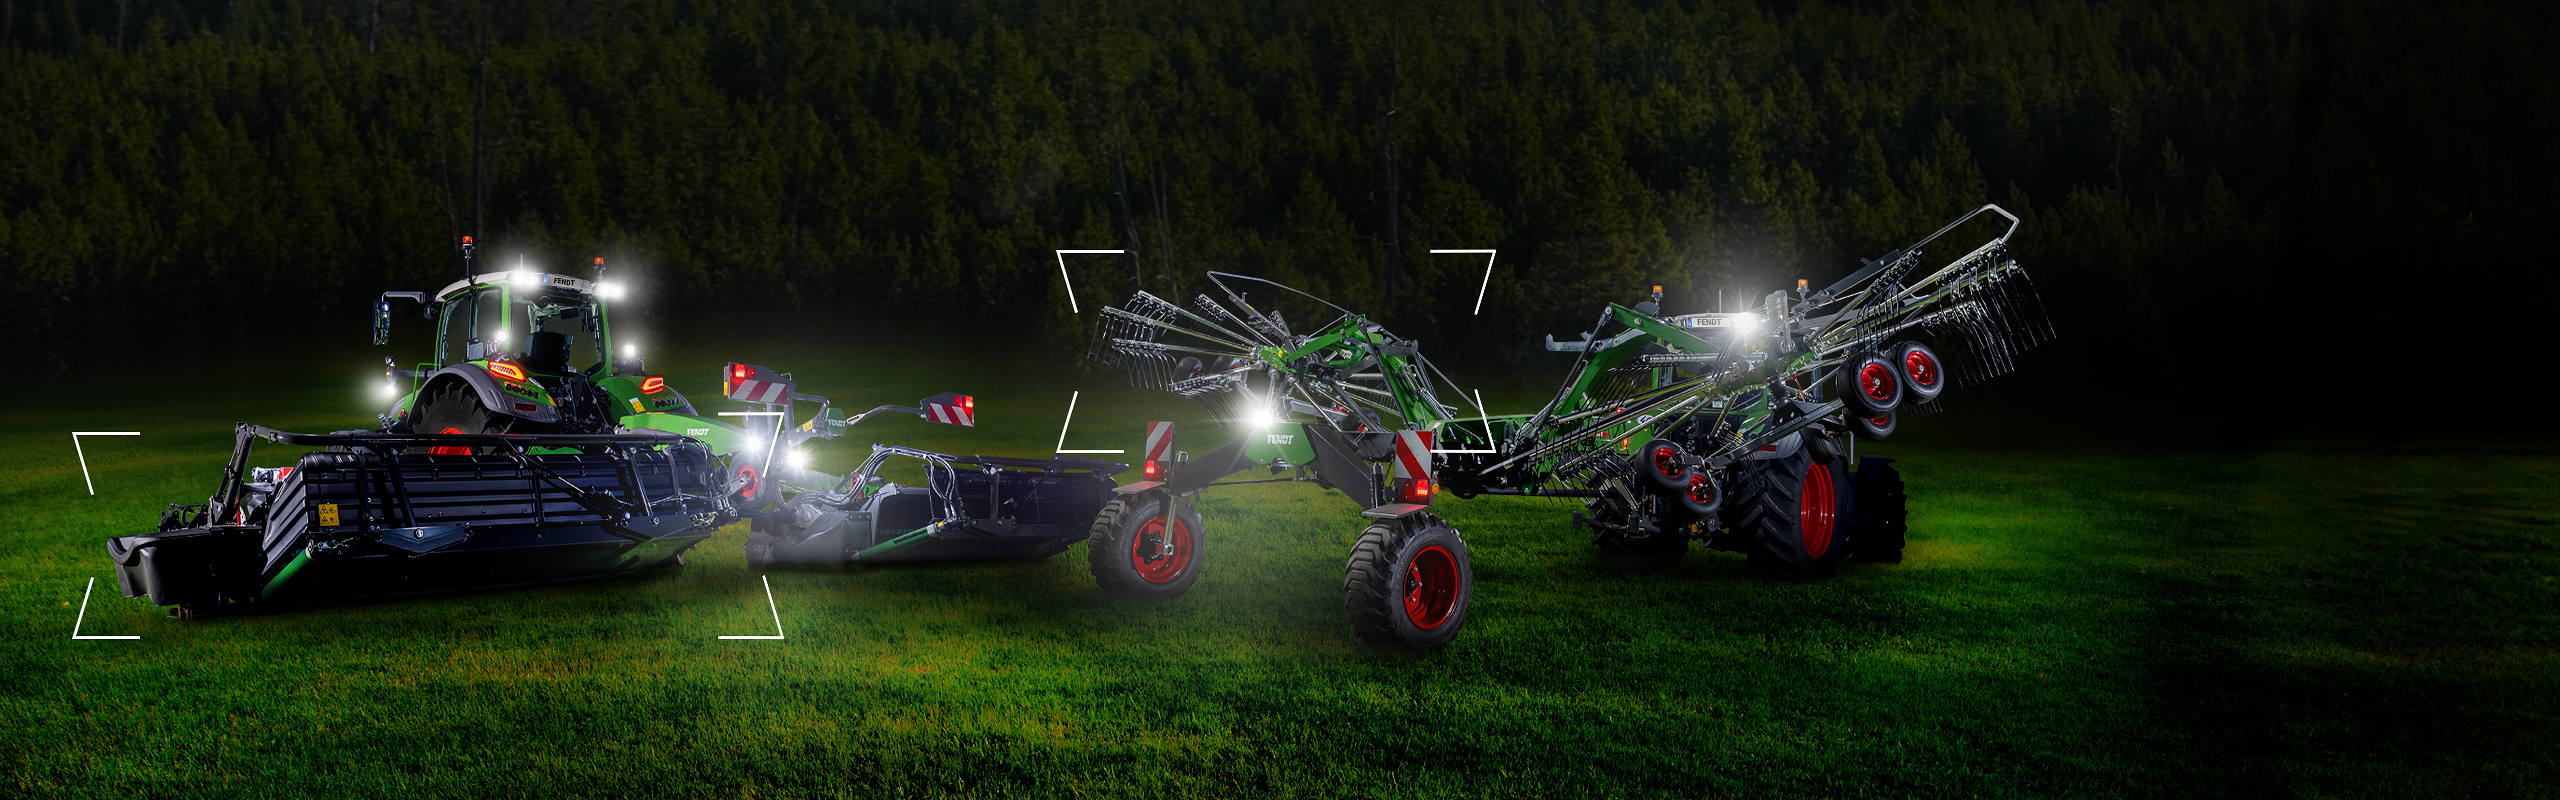 Kaks traktorit koos Fendt Slicer niidukiga ja Fendt Former harjaga seisavad hämaral heinamaal ja on valgustatud.